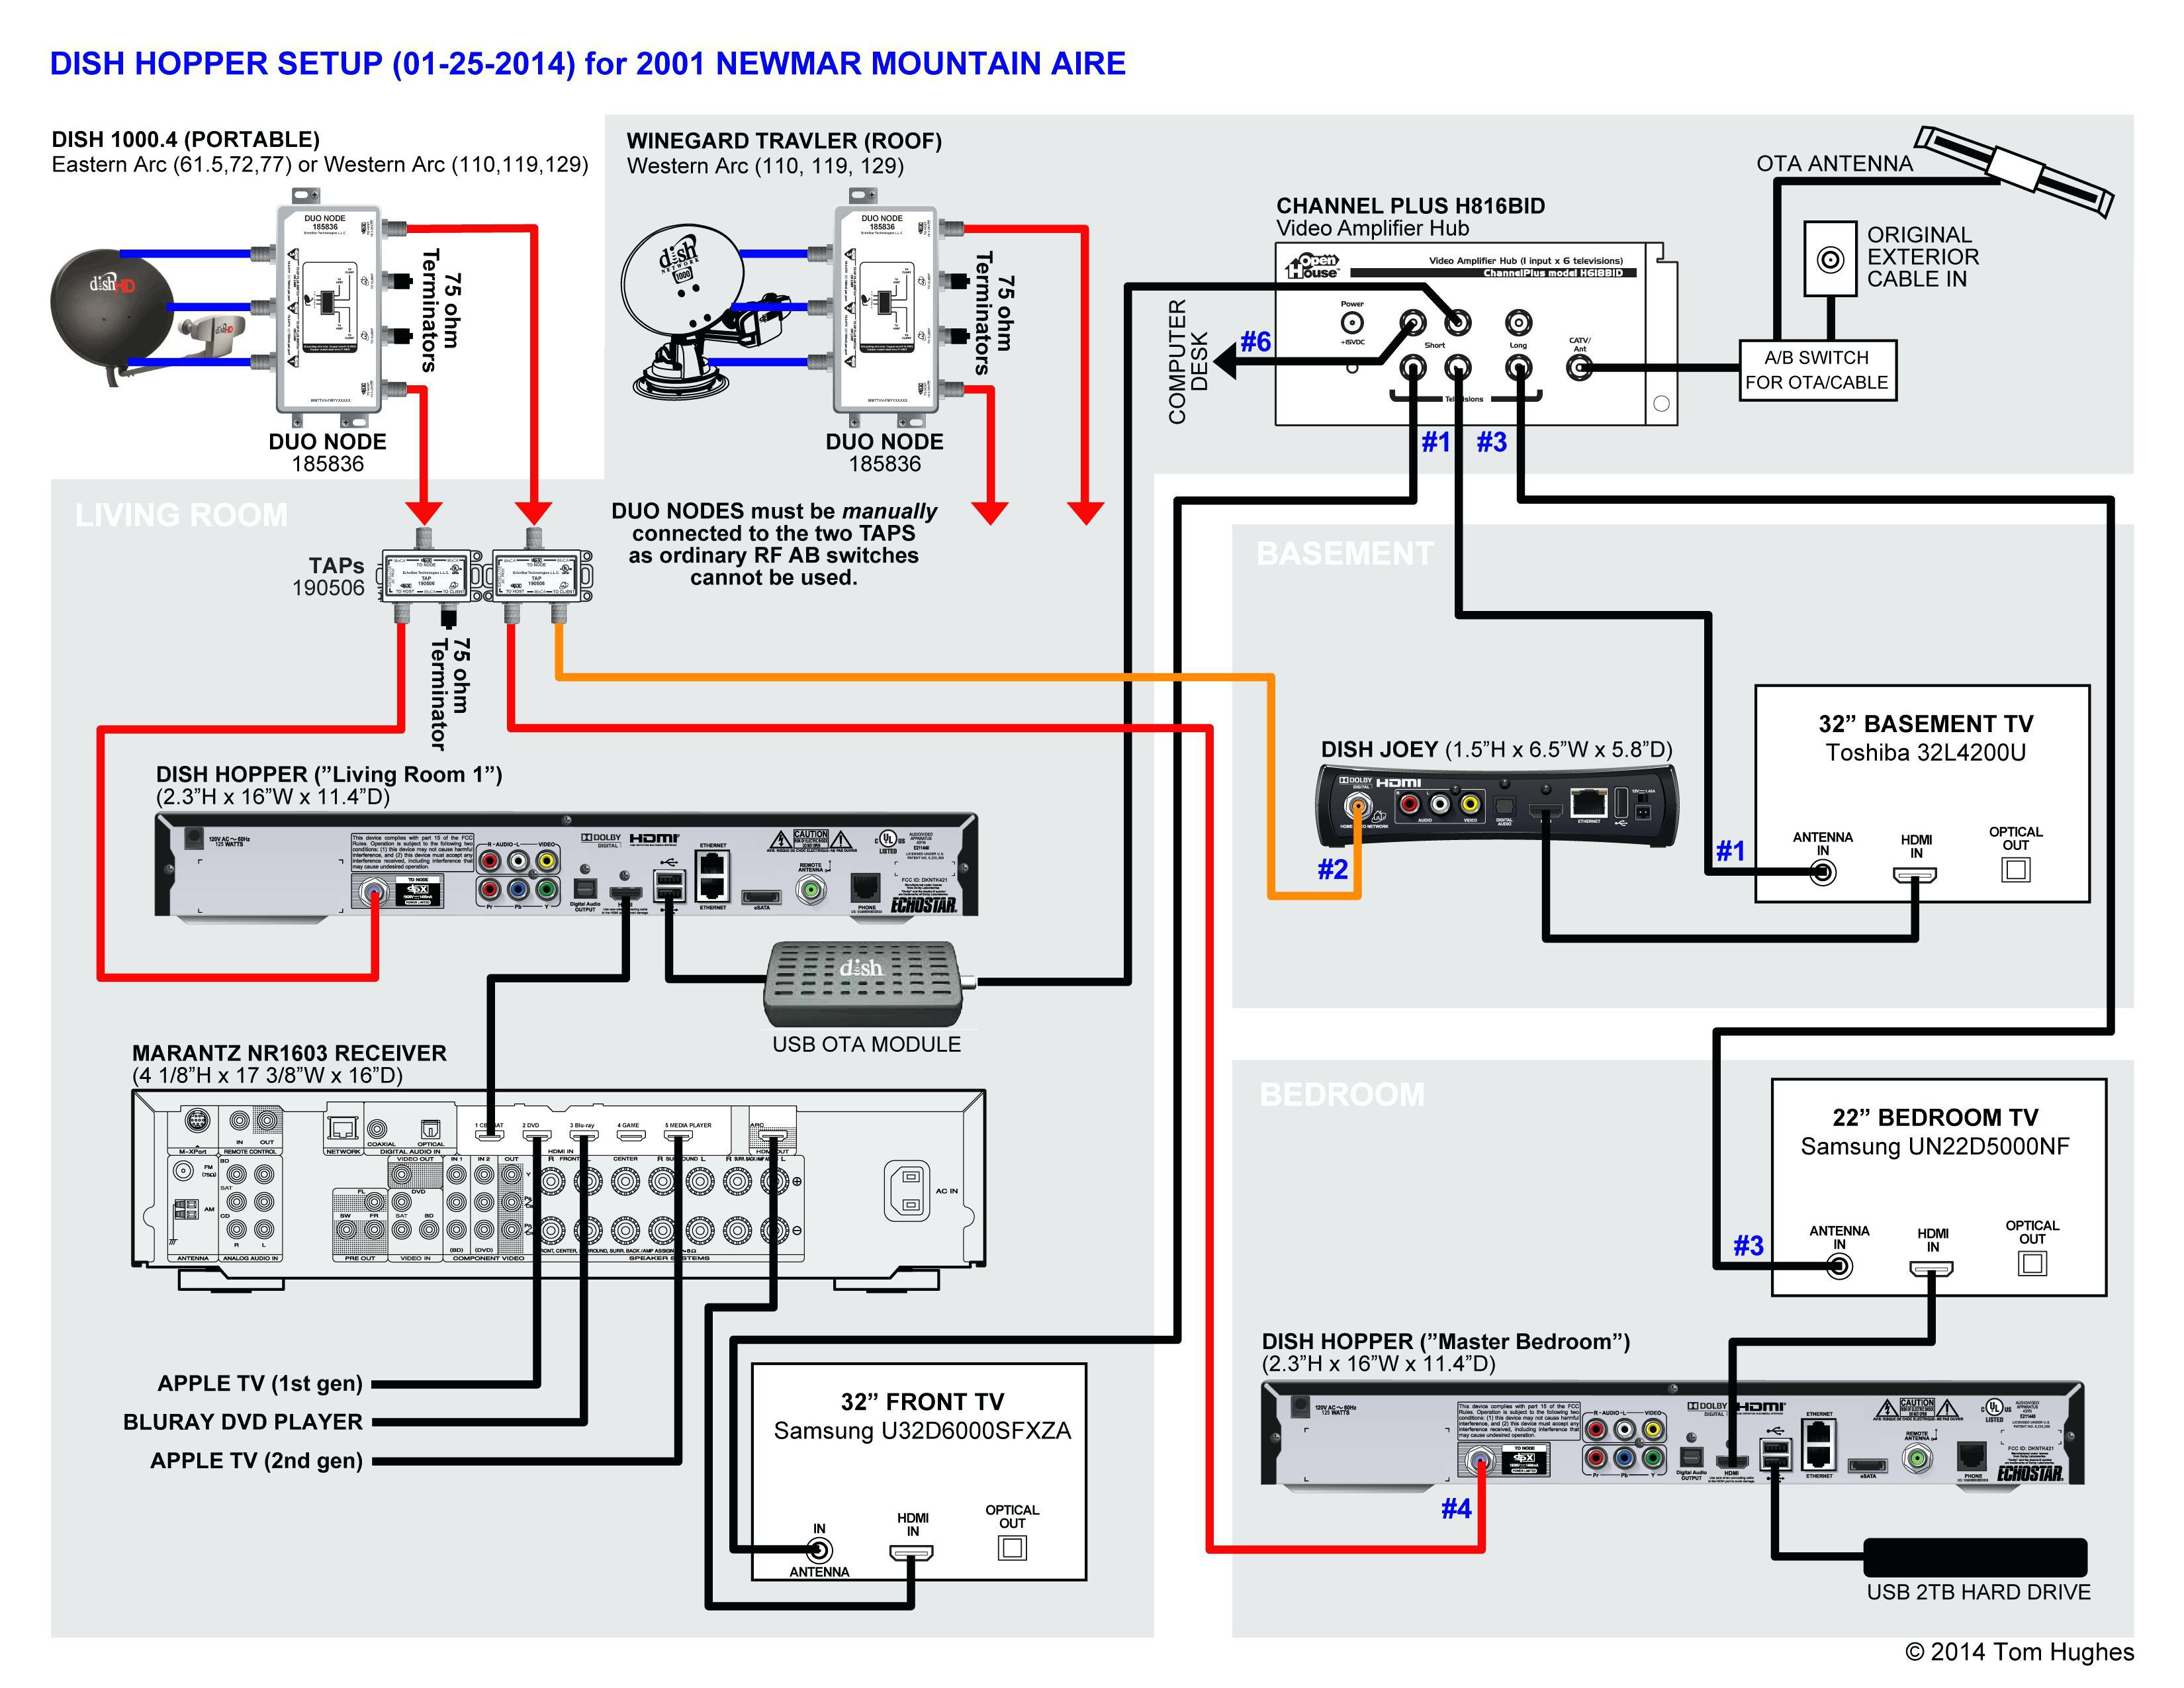 Dish 722 Receiver Wiring Diagram | Wiring Diagram - Dish Vip722K Wiring Diagram